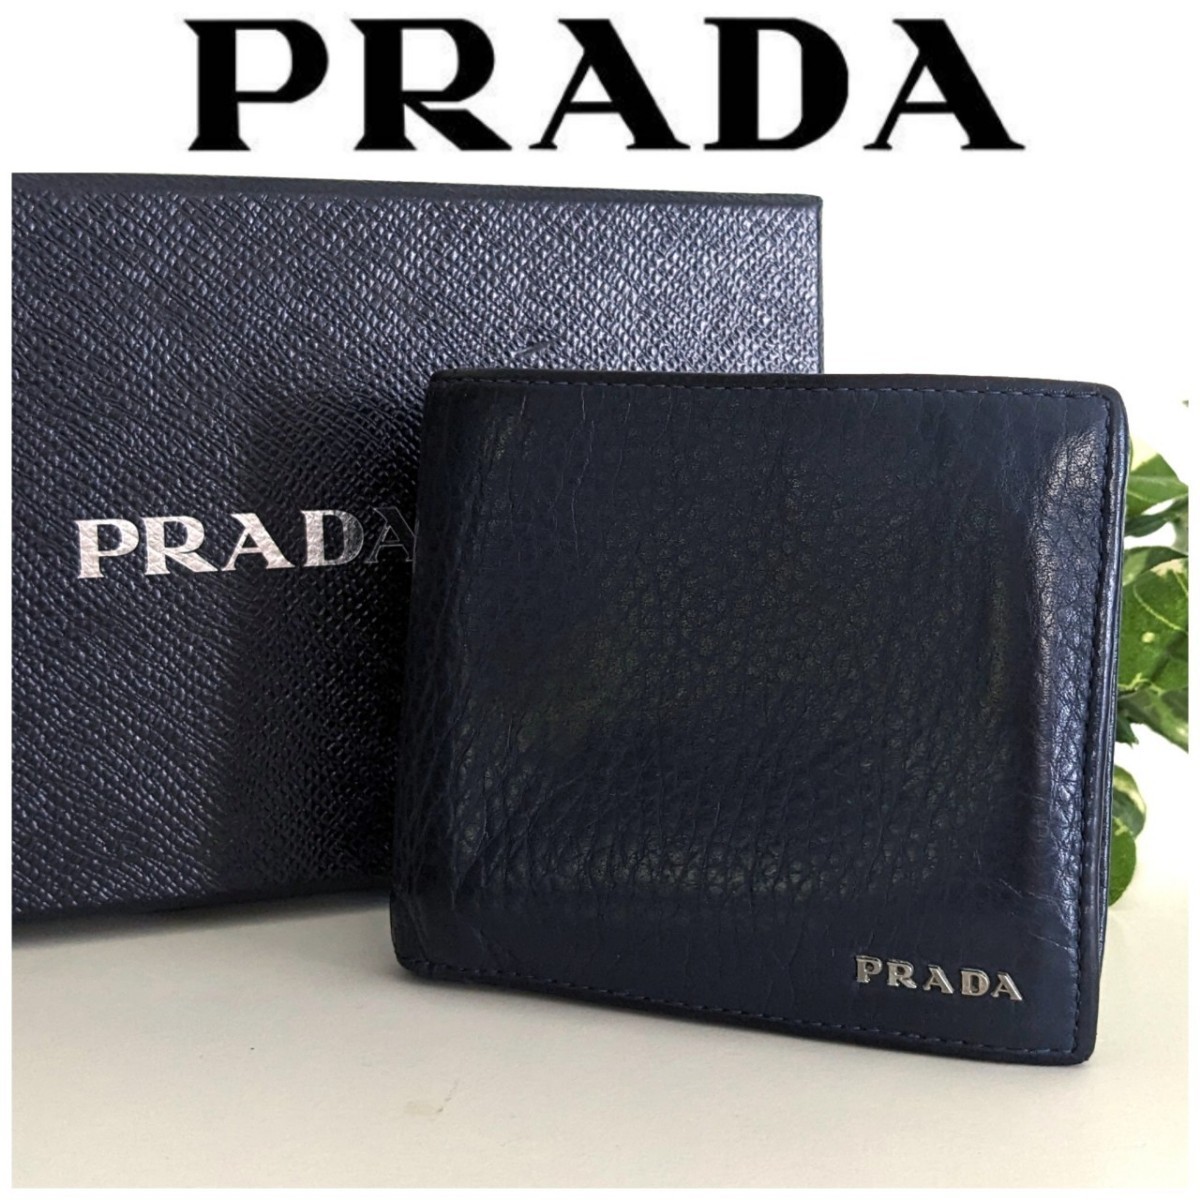 良品 PRADA プラダ 本革 レザー 二つ折り 財布 シンプル ネイビー ブルー 紺 黒 青 シルバー ヴィンテージ ウォレット レディース メンズ